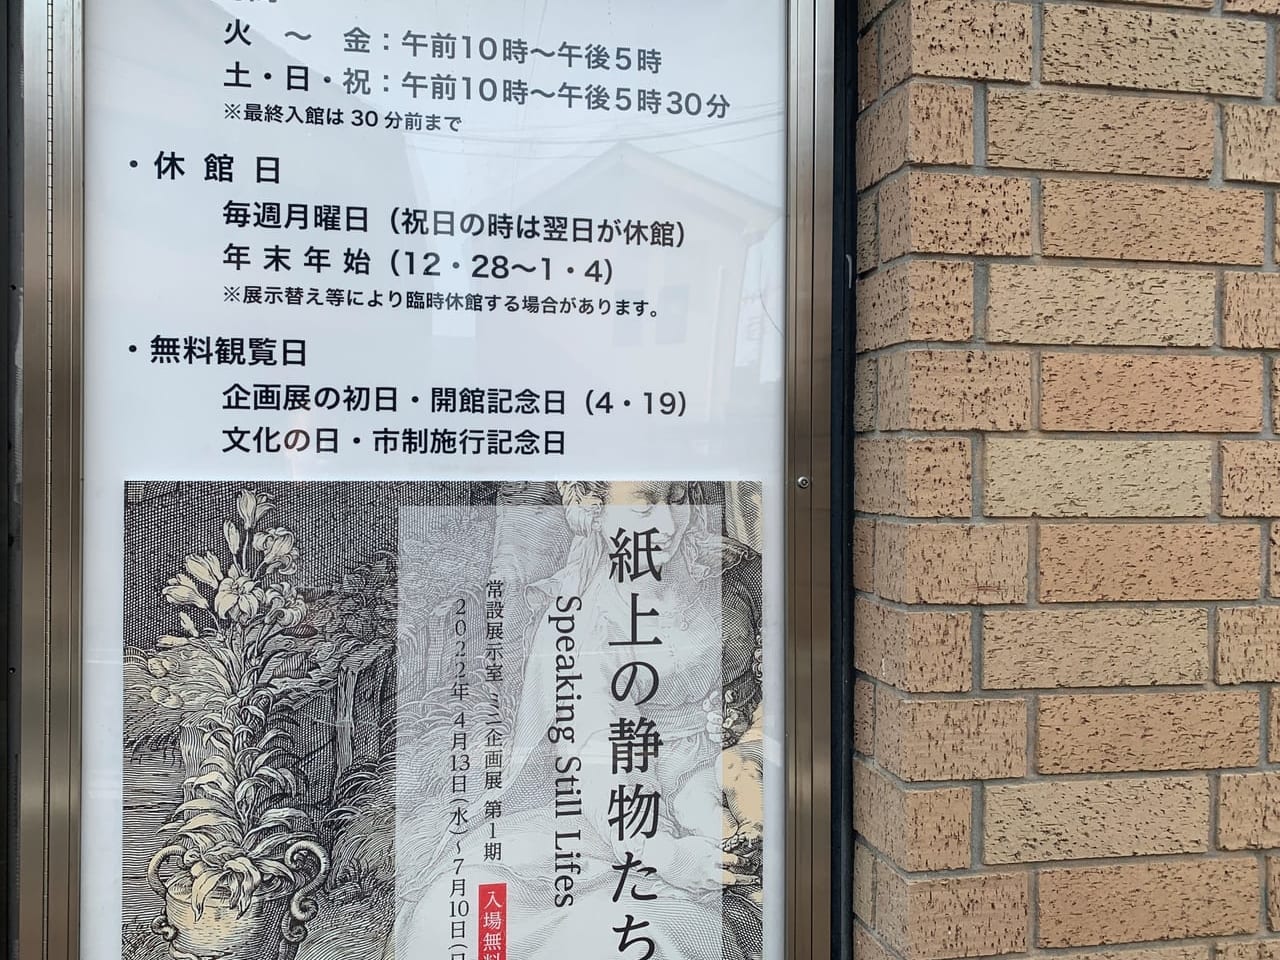 町田市立国際版画美術館で彫刻刀が刻む戦後日本1